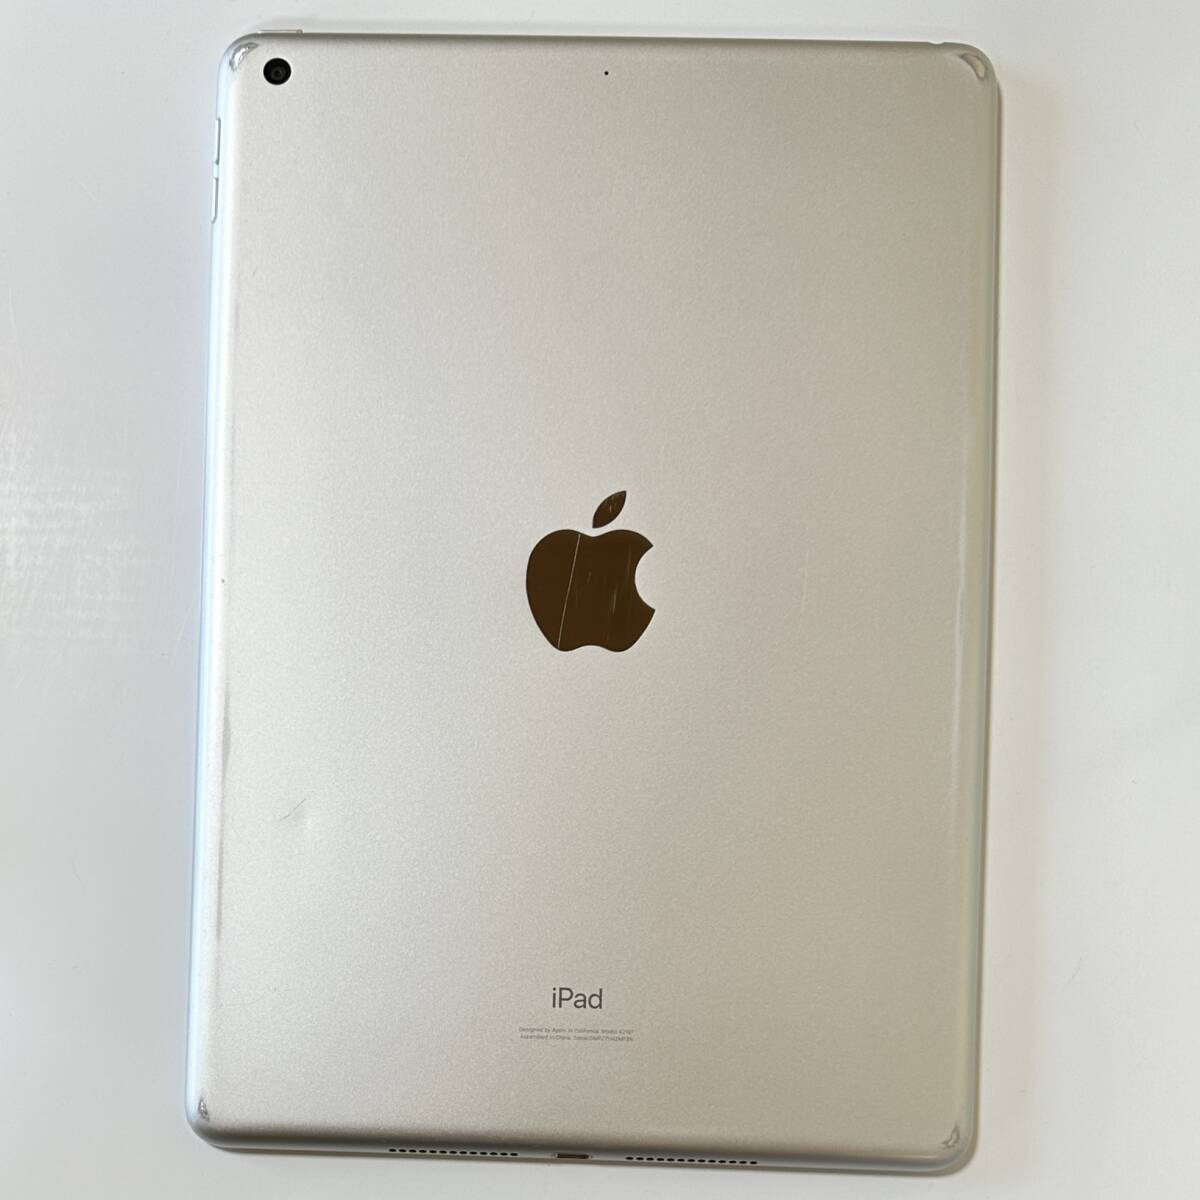 Apple iPad ( no. 7 поколение ) серебряный 32GB MW752J/A Wi-Fi модель iOS17.4.1 Acty беж .n разблокирован 